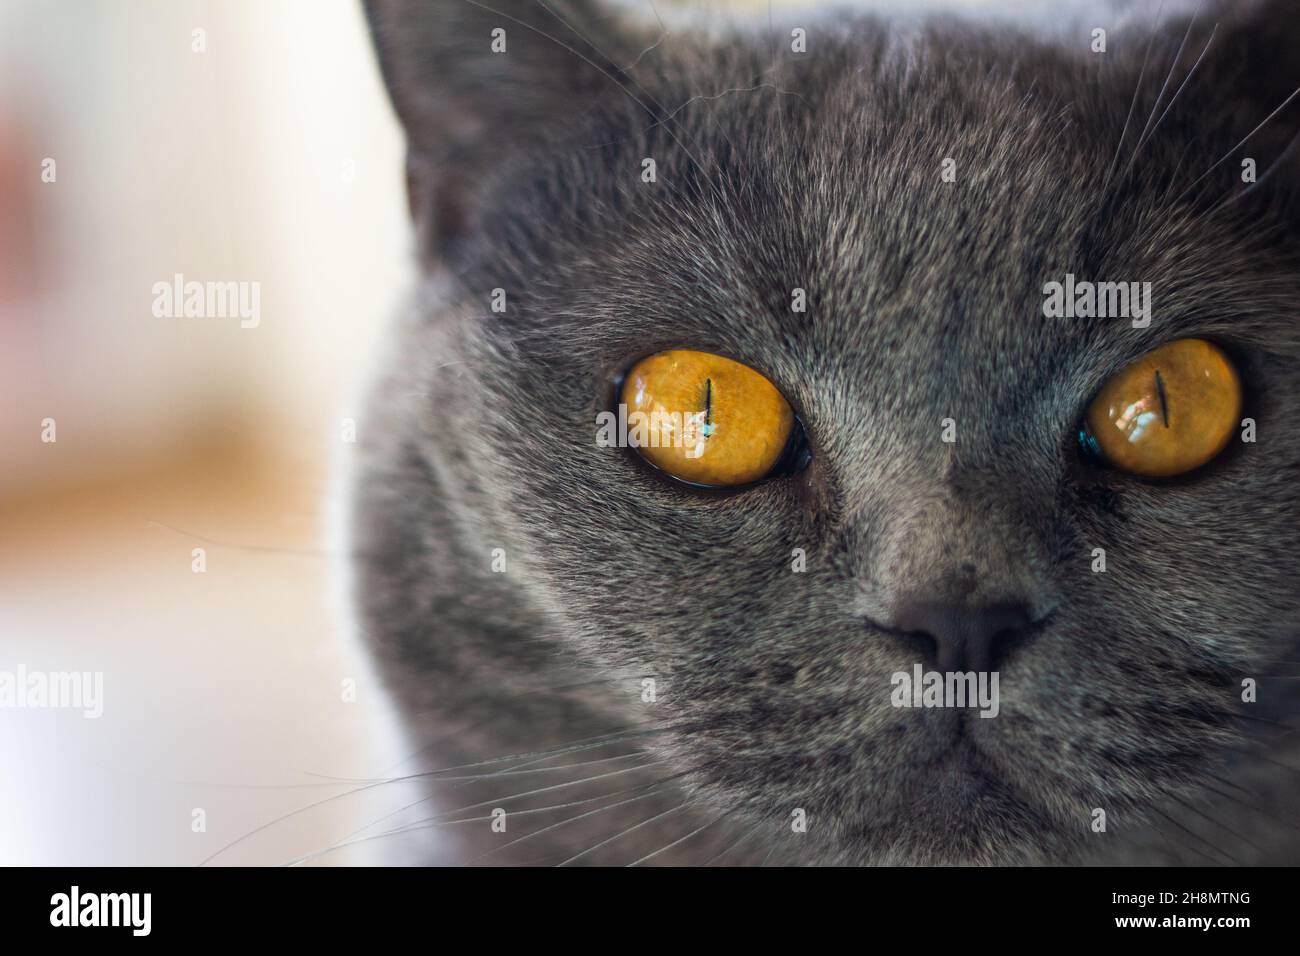 Ritratto di gatto britannico shorthair. Vista closeup agli occhi degli animali. Gatto grigio purebred domestico che guarda la macchina fotografica, vista frontale Foto Stock